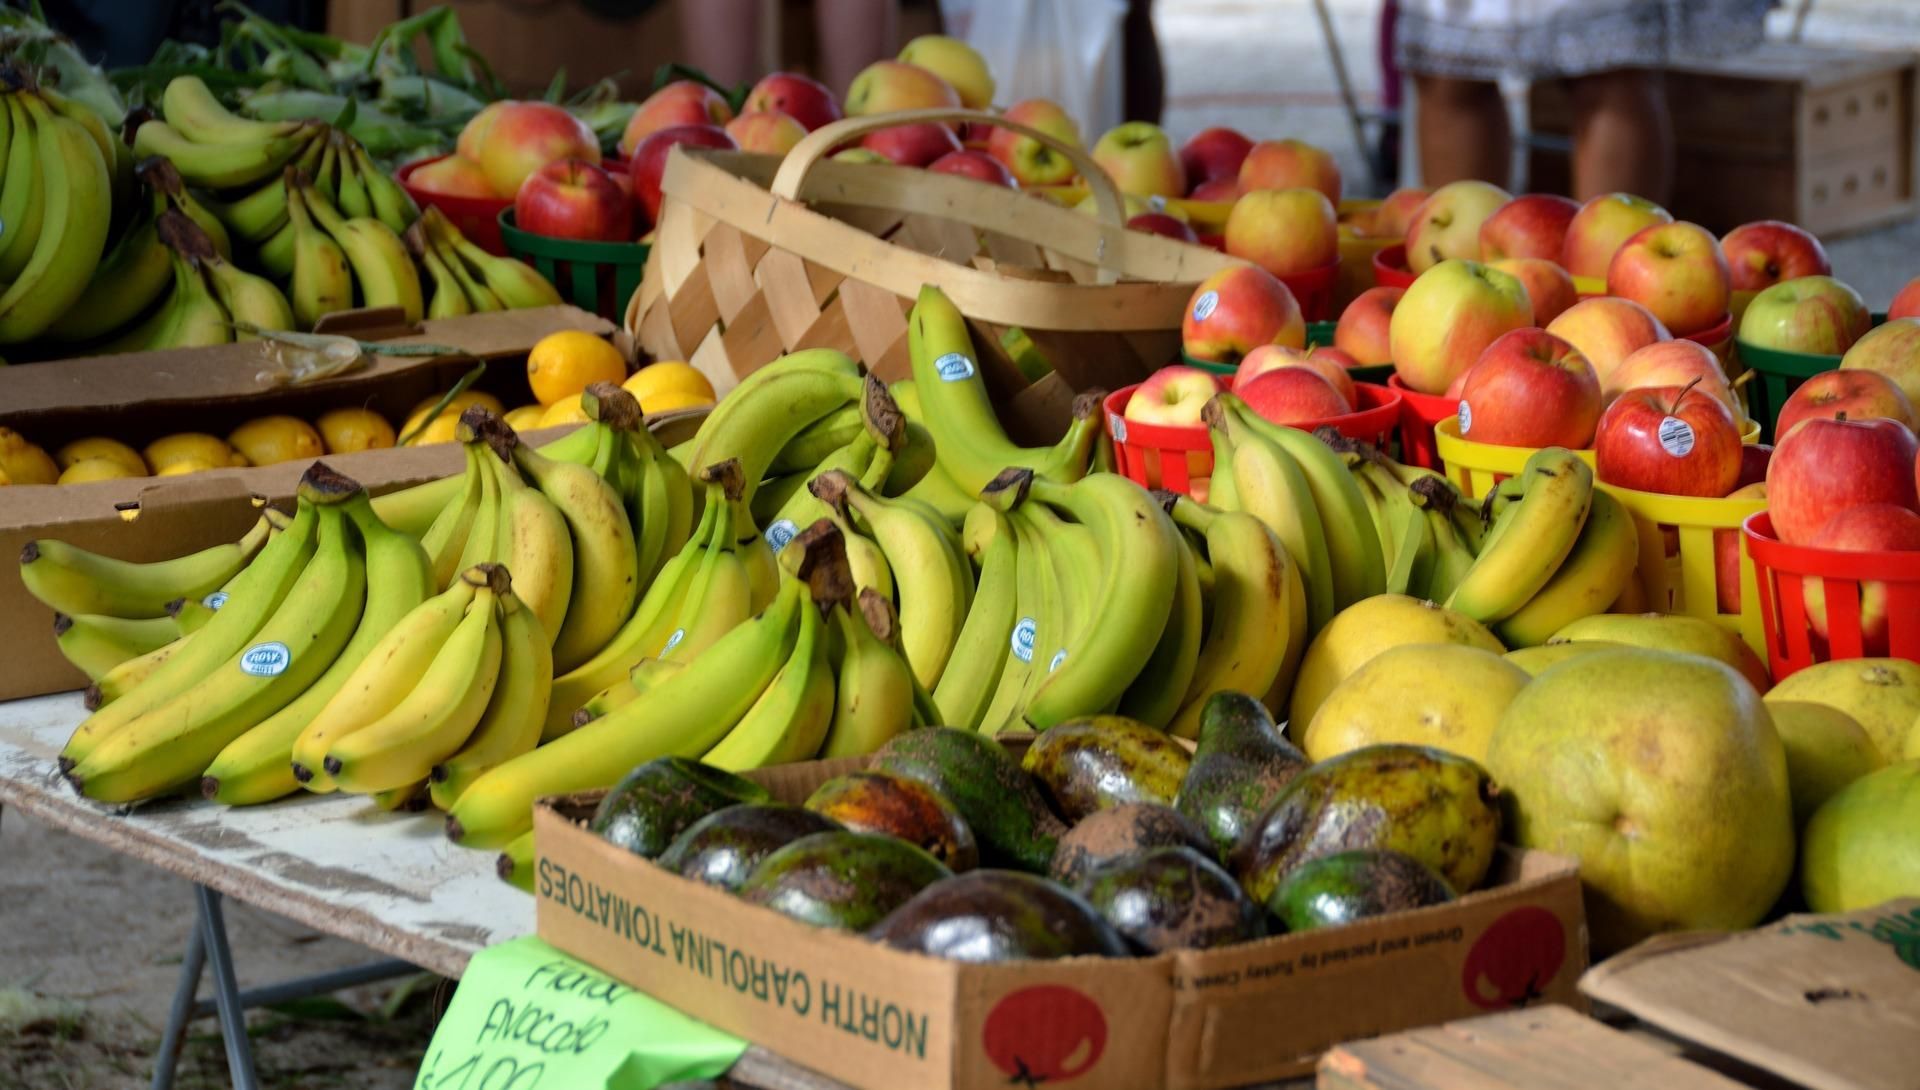 Як правильно обирати фрукти та овочі:  10 порад тим, хто береже своє здоров'я та бюджет